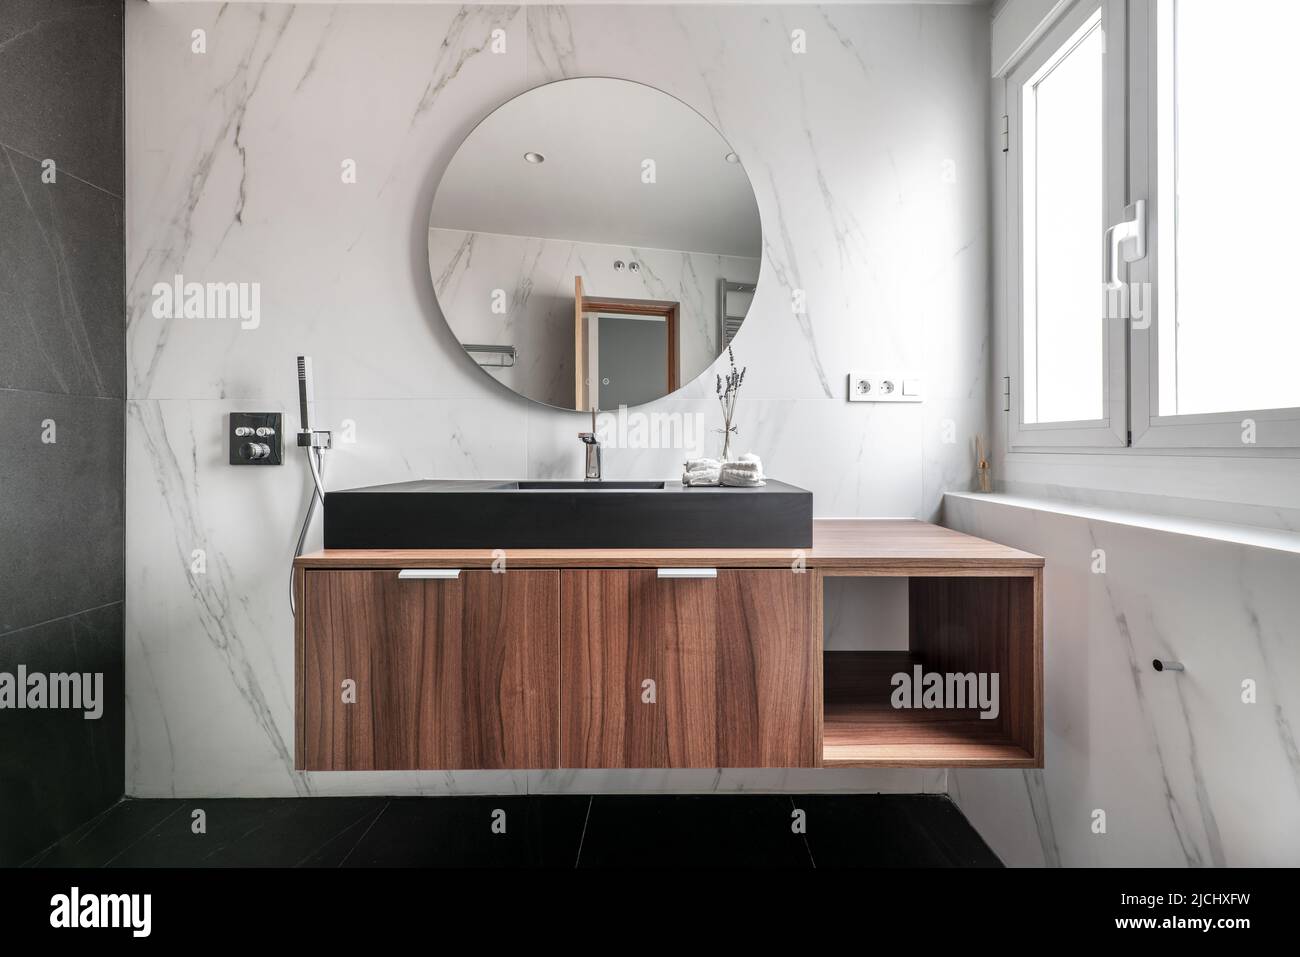 Modernes Design-Badezimmer mit Holzschränken, schwarzem Porzellanwaschbecken, kreisförmigem Spiegelrahmen, Chrommetallarmaturen und -Armaturen sowie schwarzem Marmorboden Stockfoto